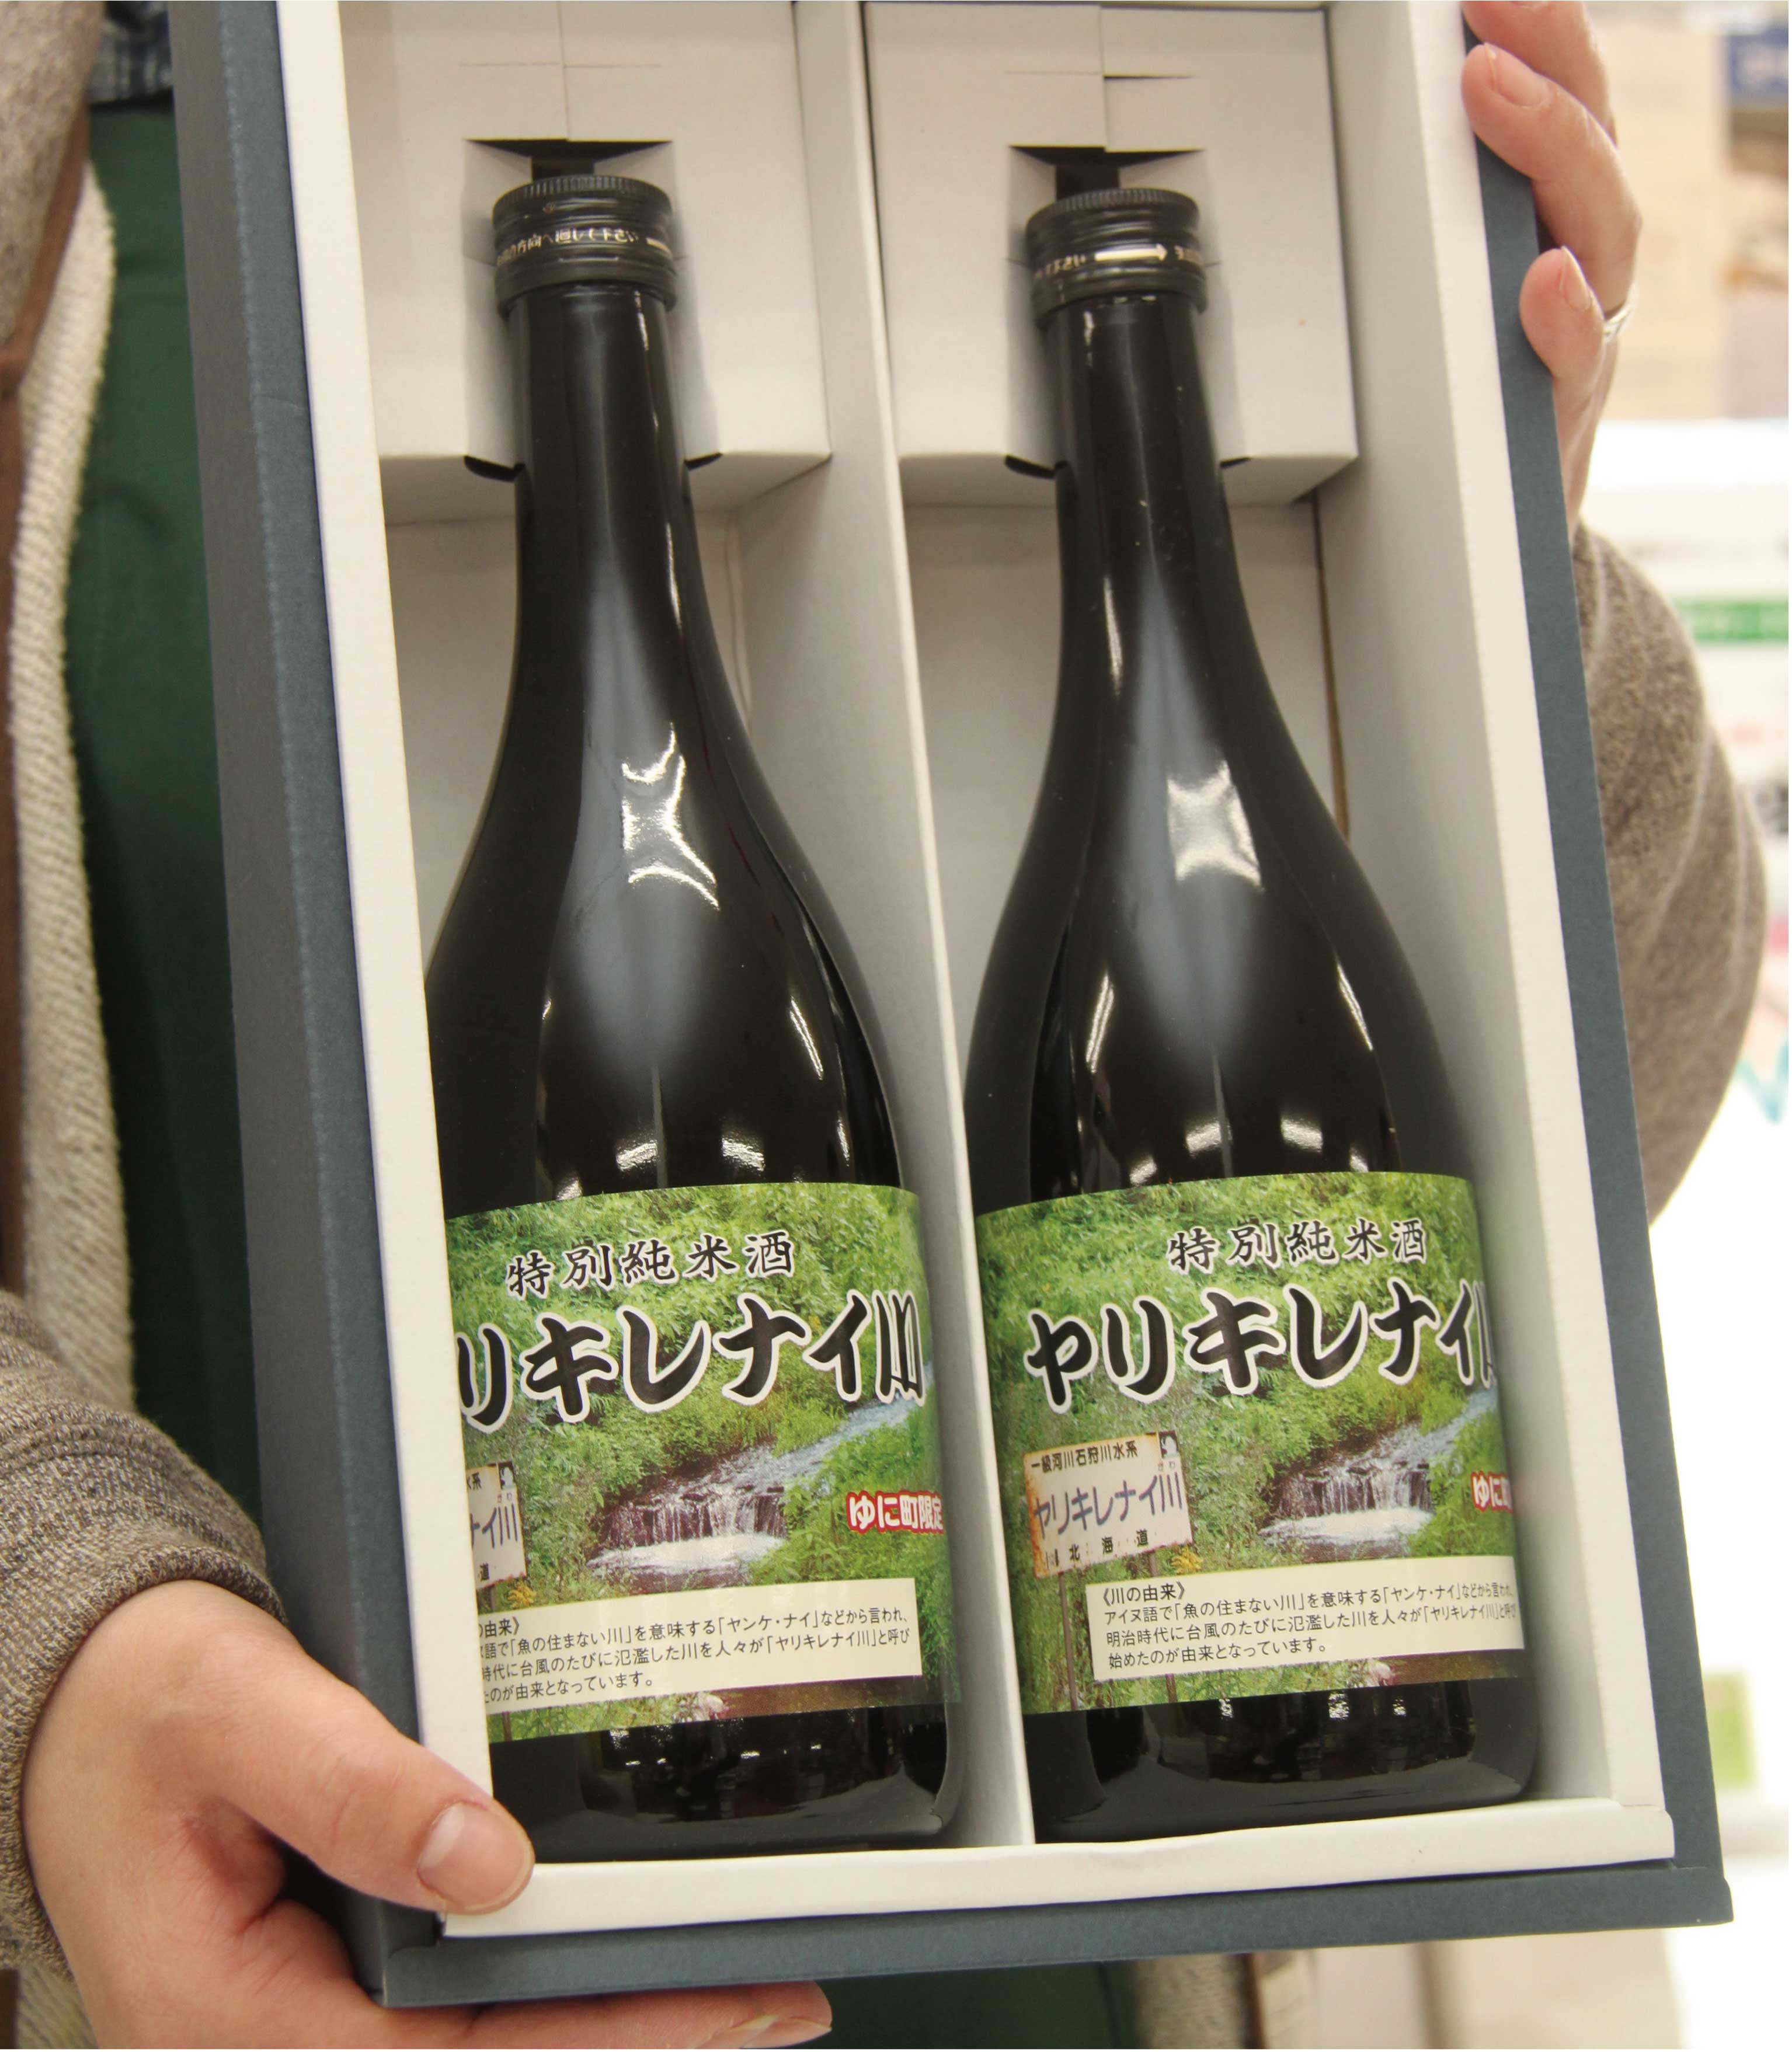 特別純米酒ヤリキレナイ川 2本セット(通年発送)の特産品画像